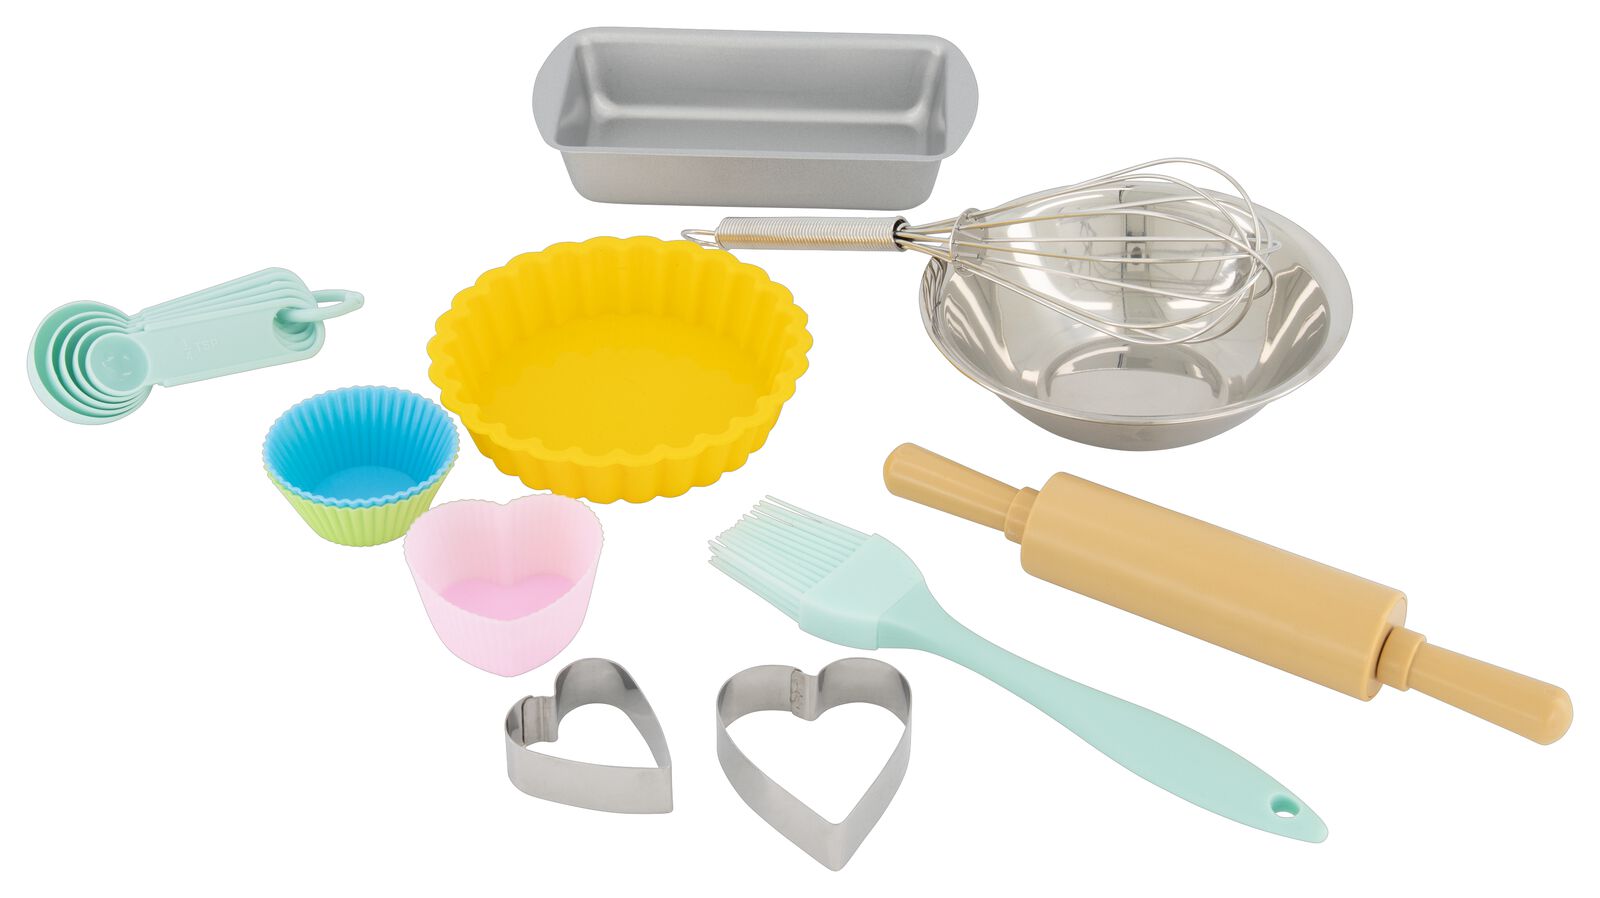 HEMA - Vos enfants vont pouvoir jouer à cuisiner en pâte à modeler. 😍 Kit  de pâte à modeler avec moules et ustensiles pour réaliser de chouettes  créations 8,50€ en magasin et